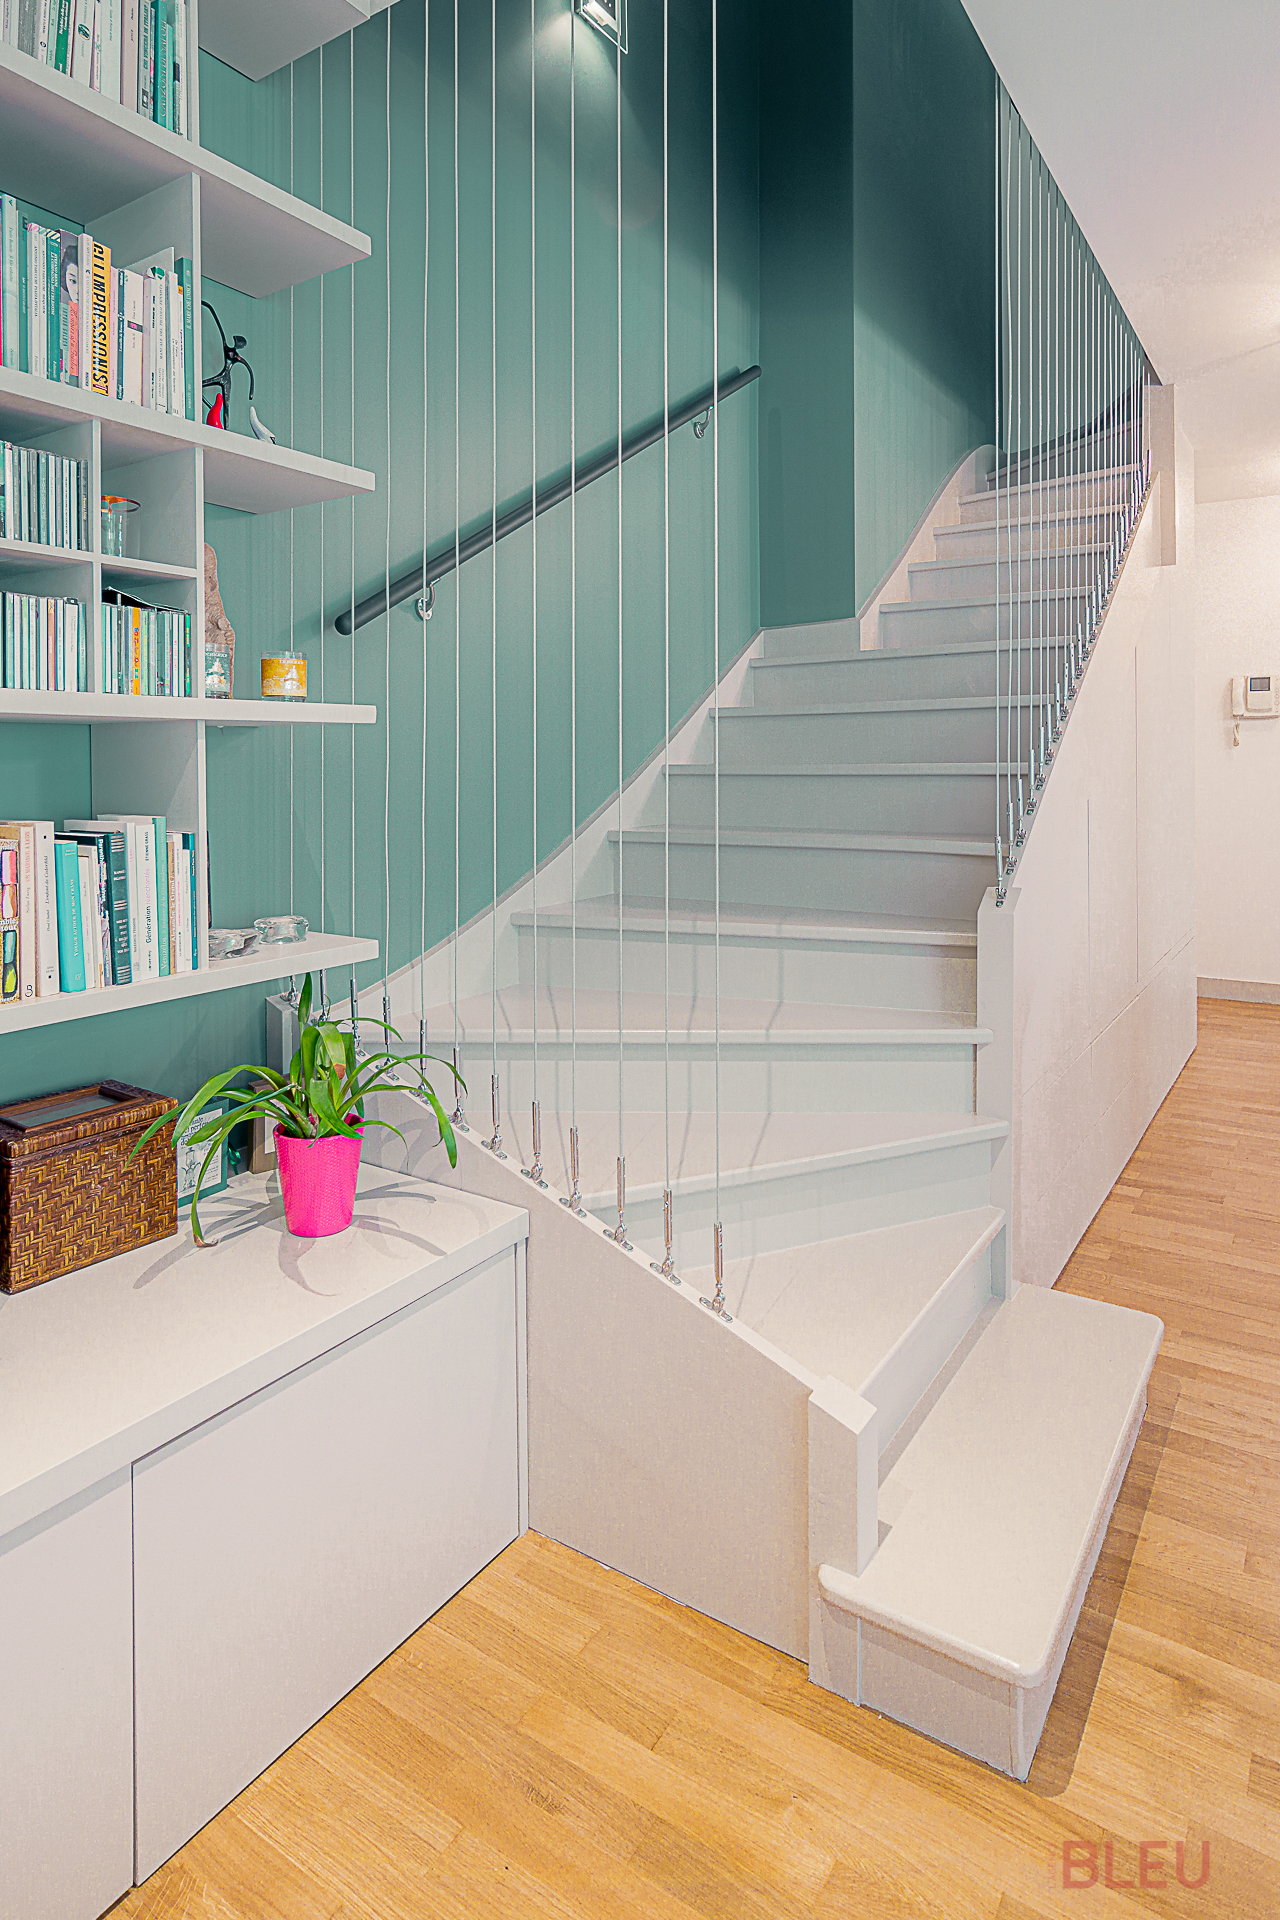 Espace de vie moderne avec escalier blanc, bibliothèque intégrée et parquet en bois clair, design par architecte intérieur Paris pour un appartement duplex plan.